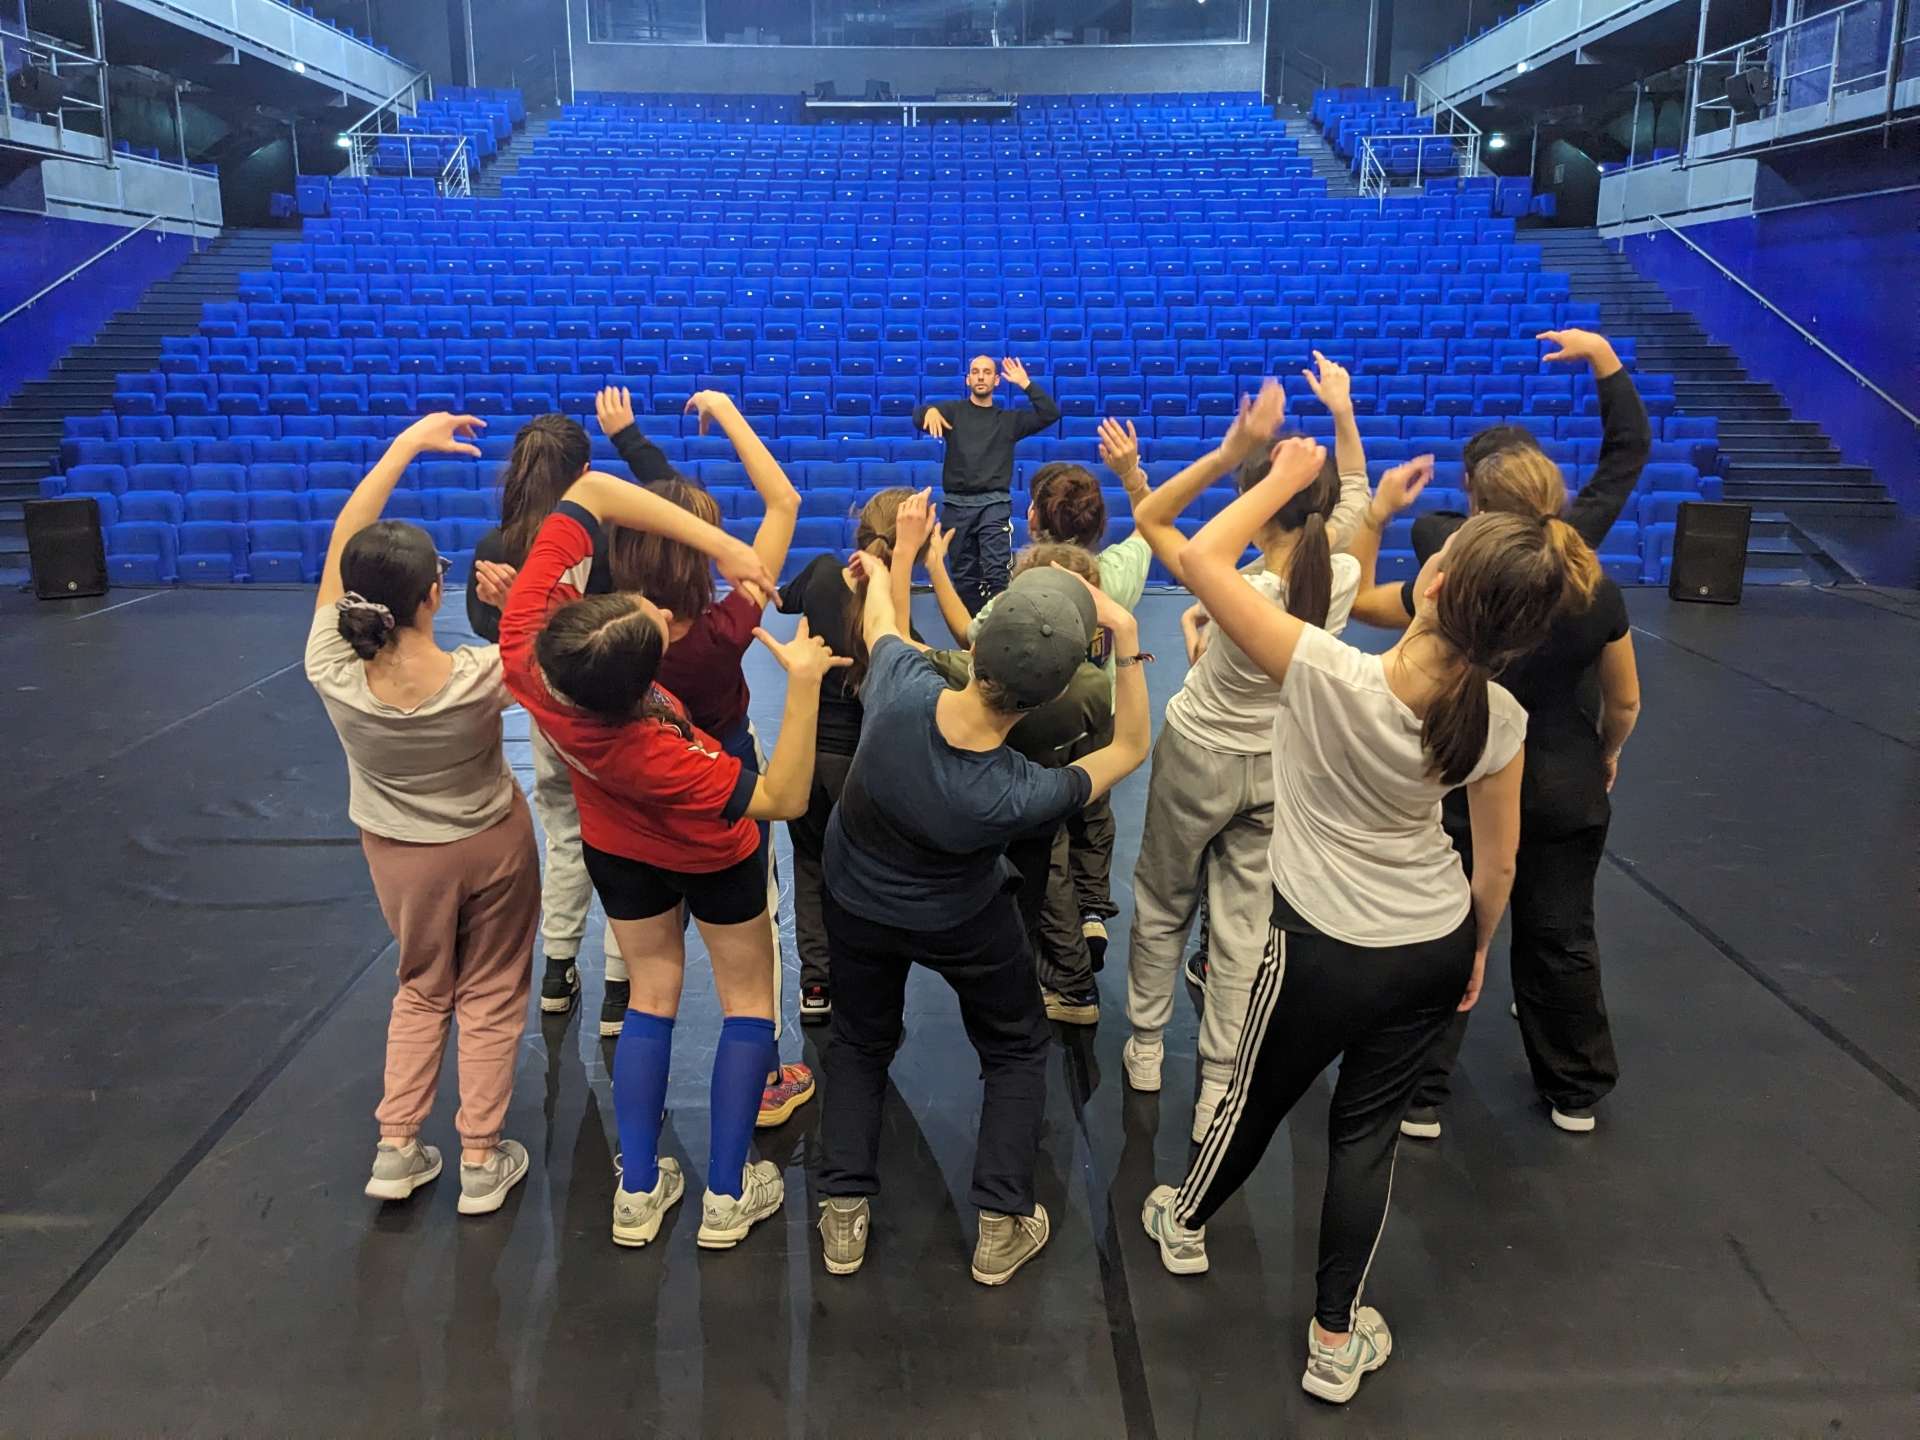 Salle Barrault, face aux fauteuils de couleur bleu et au chorégraphe Simon Dimouro, les jeunes amateurs du projet Sources effectuent une chorégraphie groupée.